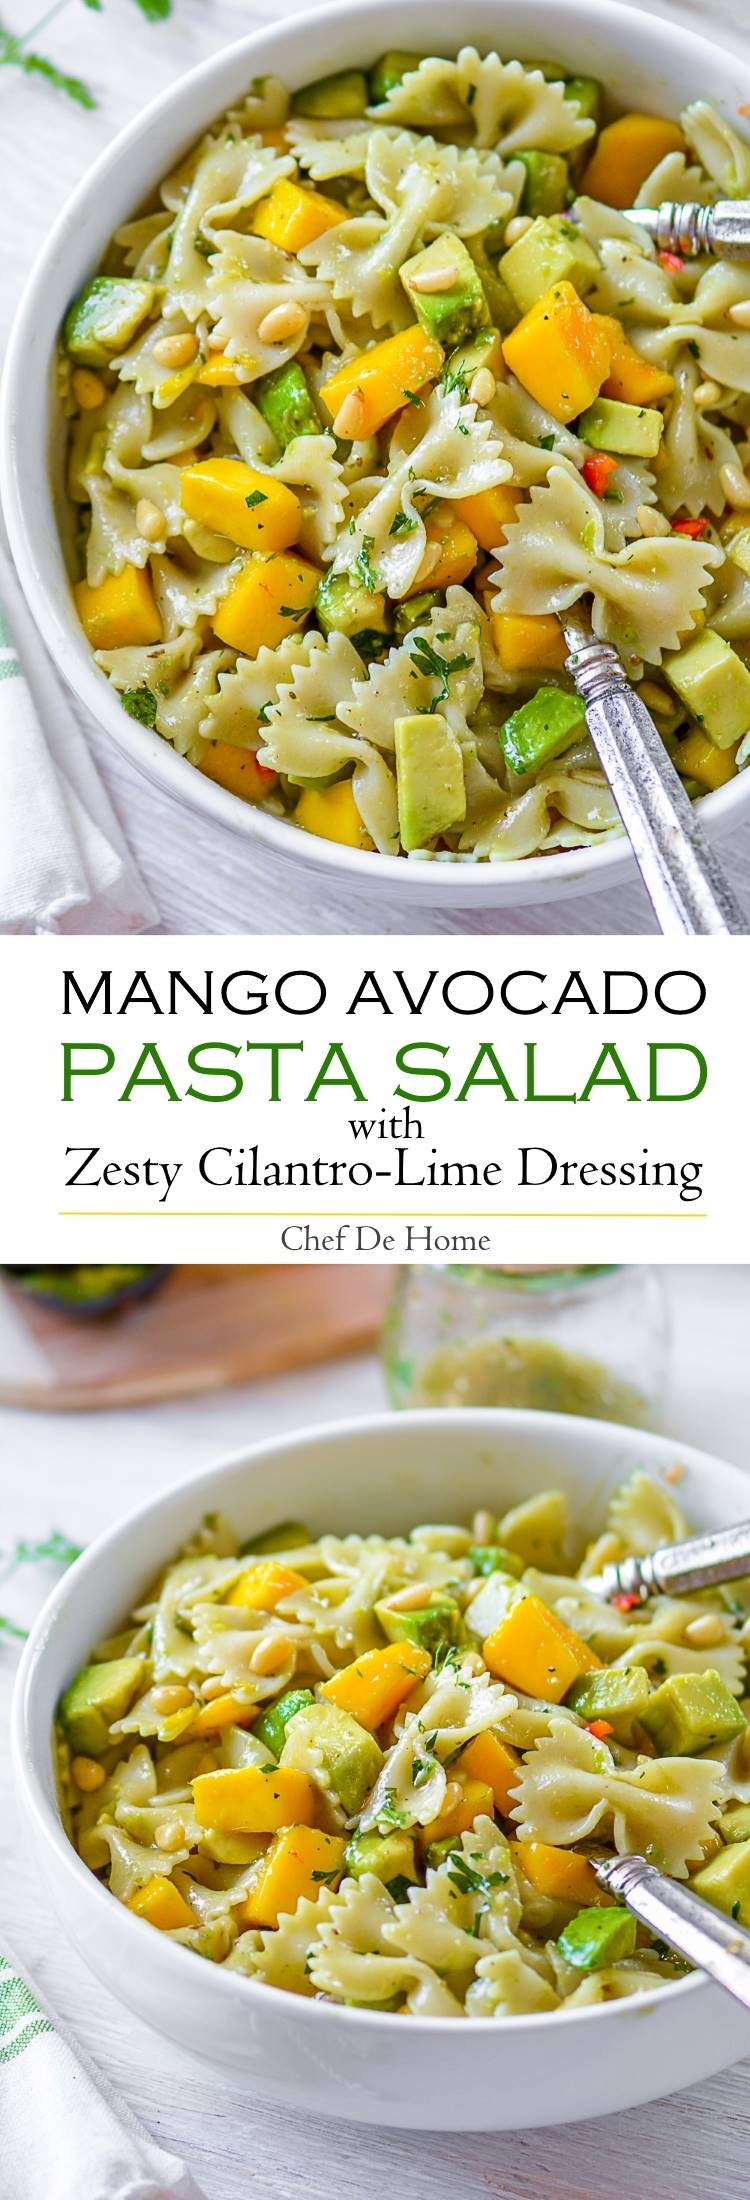 Mango Avocado Pasta Salad with Cilantro Lime Dressing | chefdehome.com